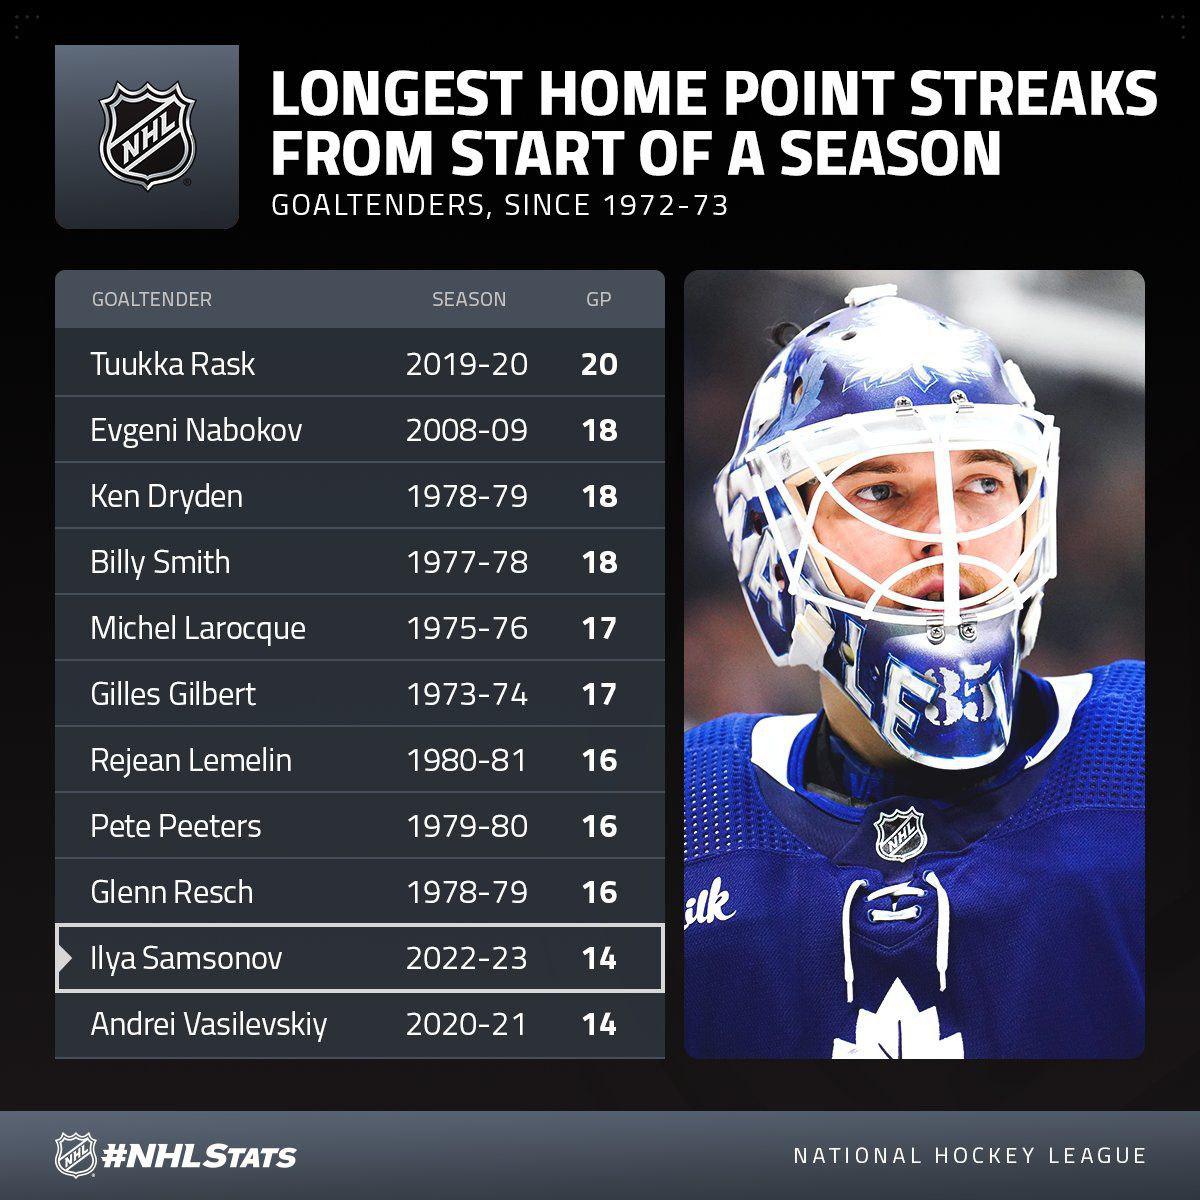 Самсонов вошел в топ-10 в НХЛ по длительности серии с набранными очками